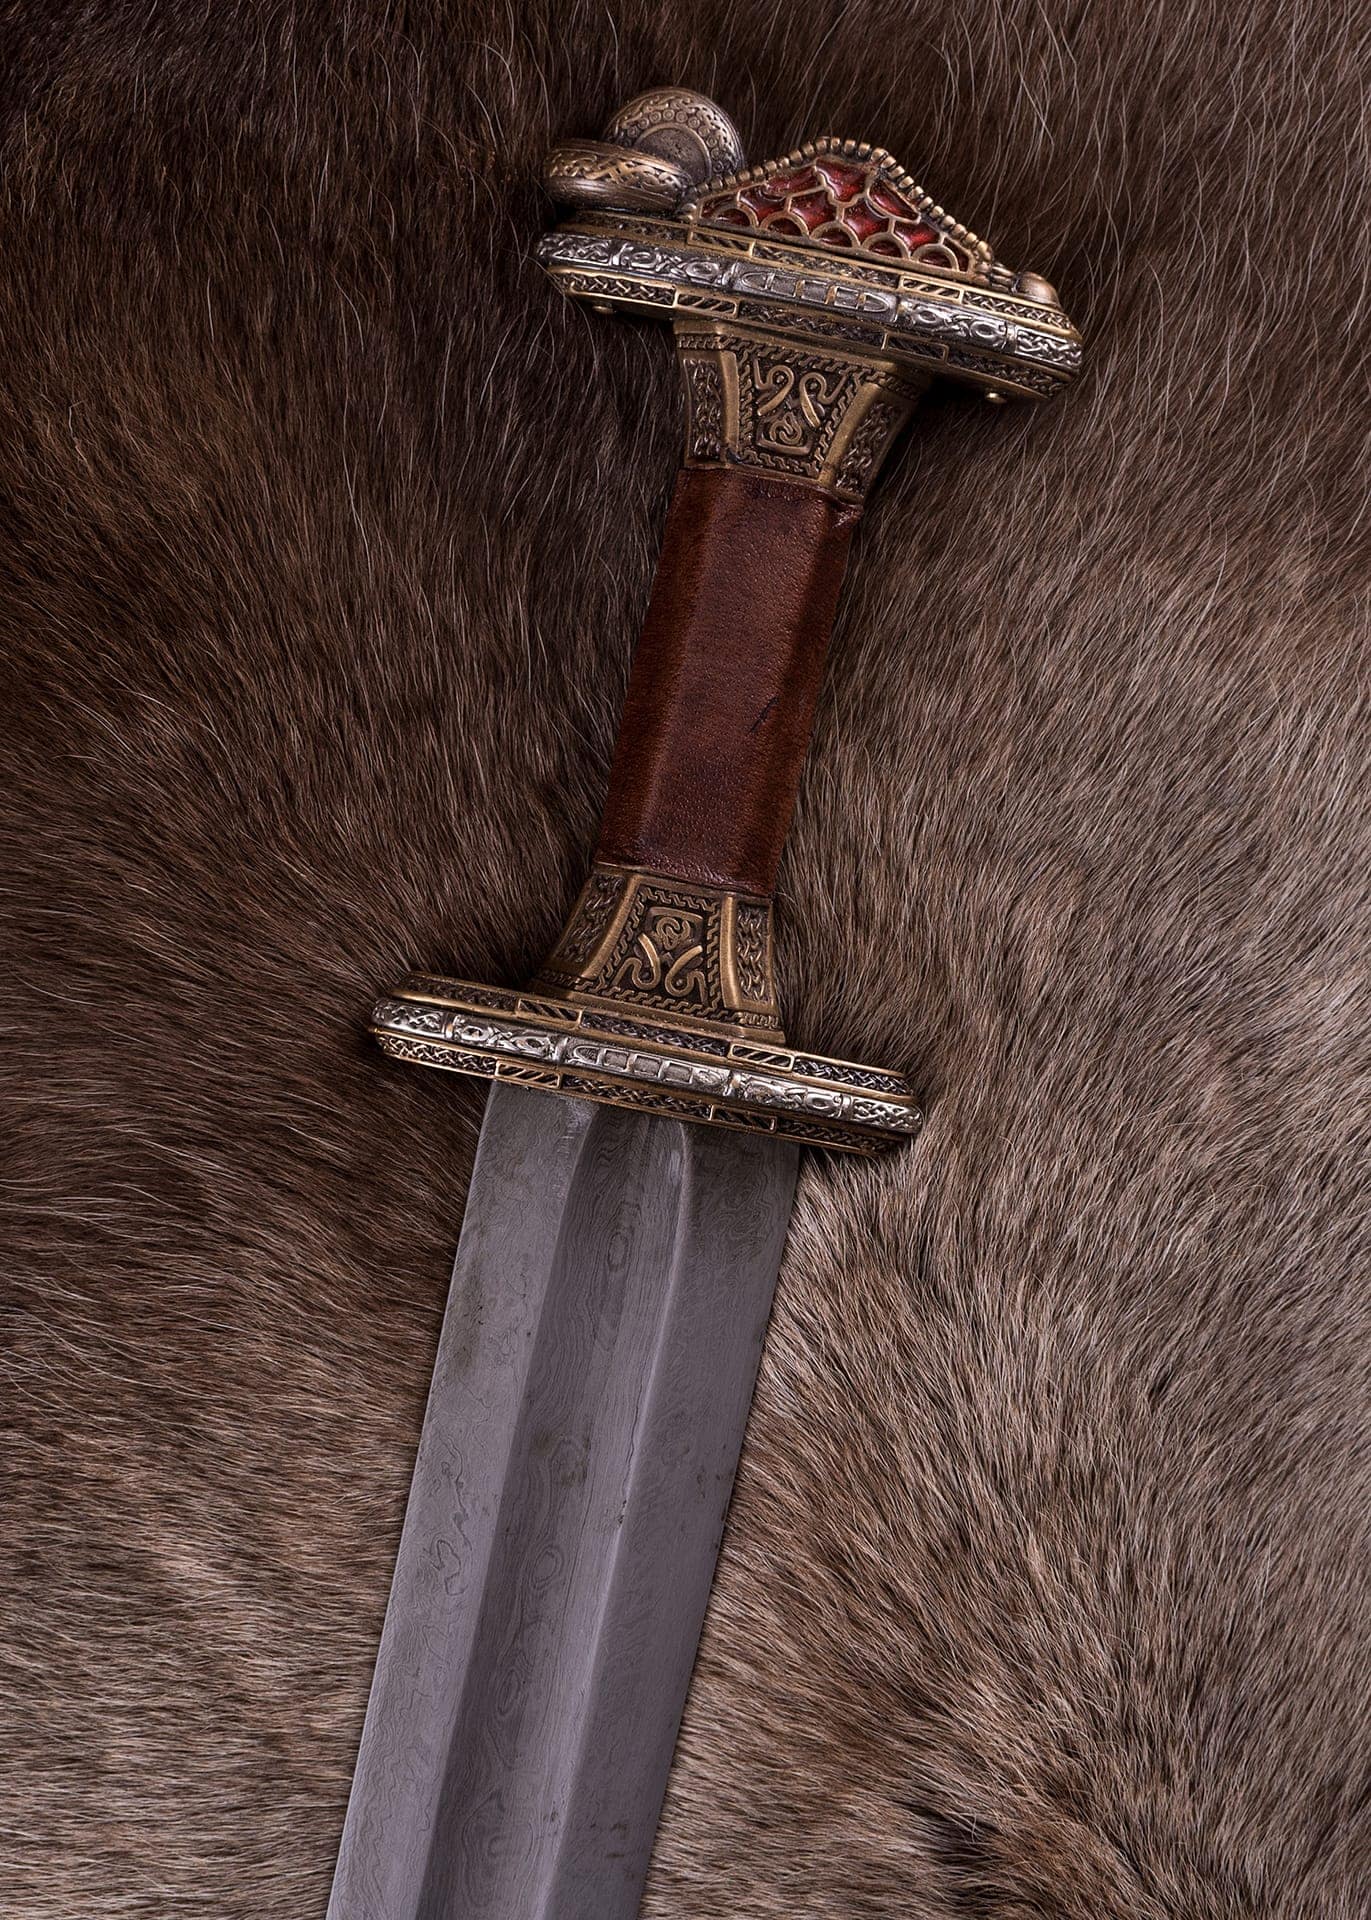 Espada de acero de damasco de la época Vendel  0116041201 - Espadas y Más